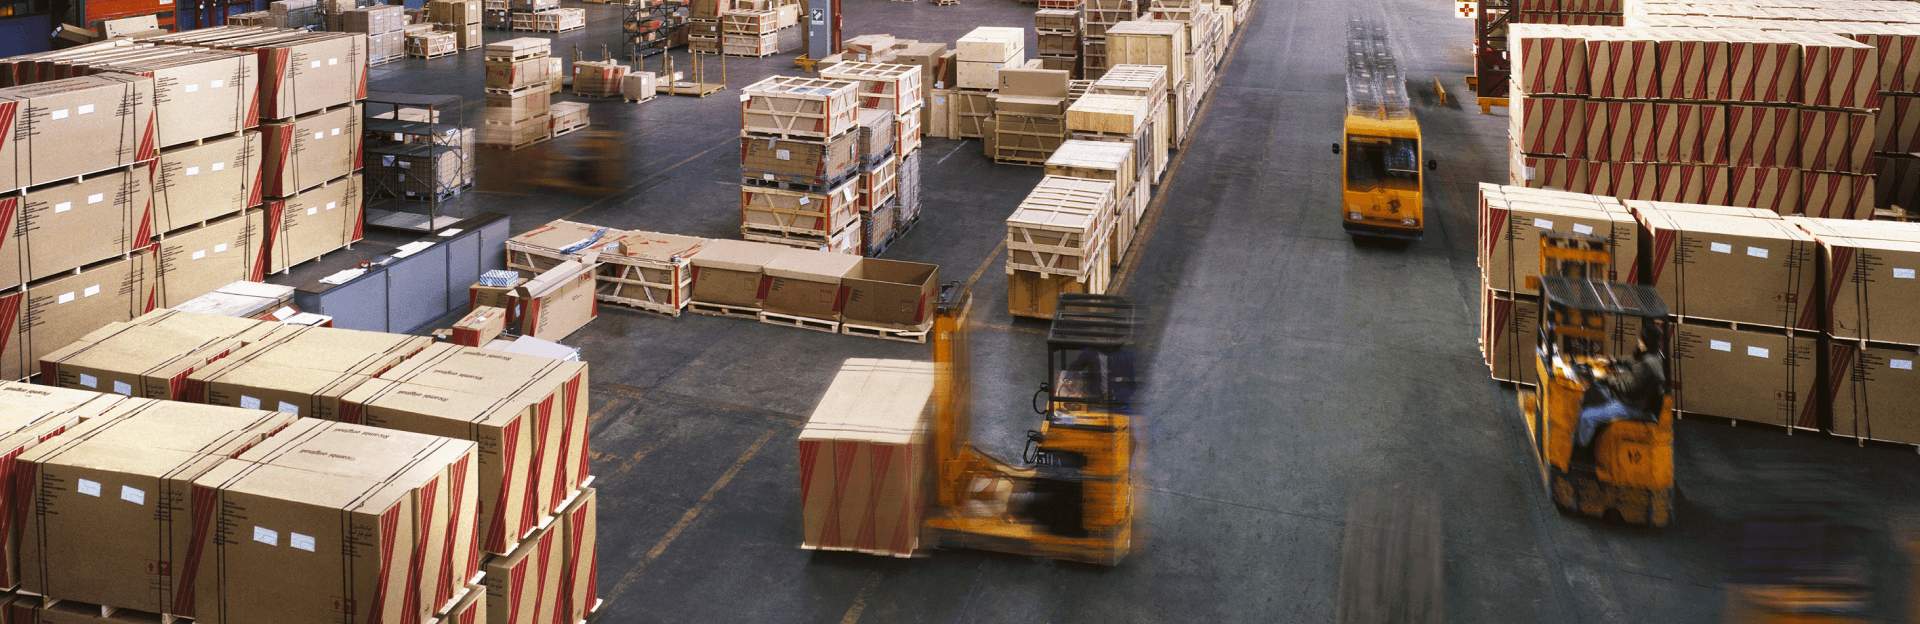 Хранение грузов на открытых и крытых складах